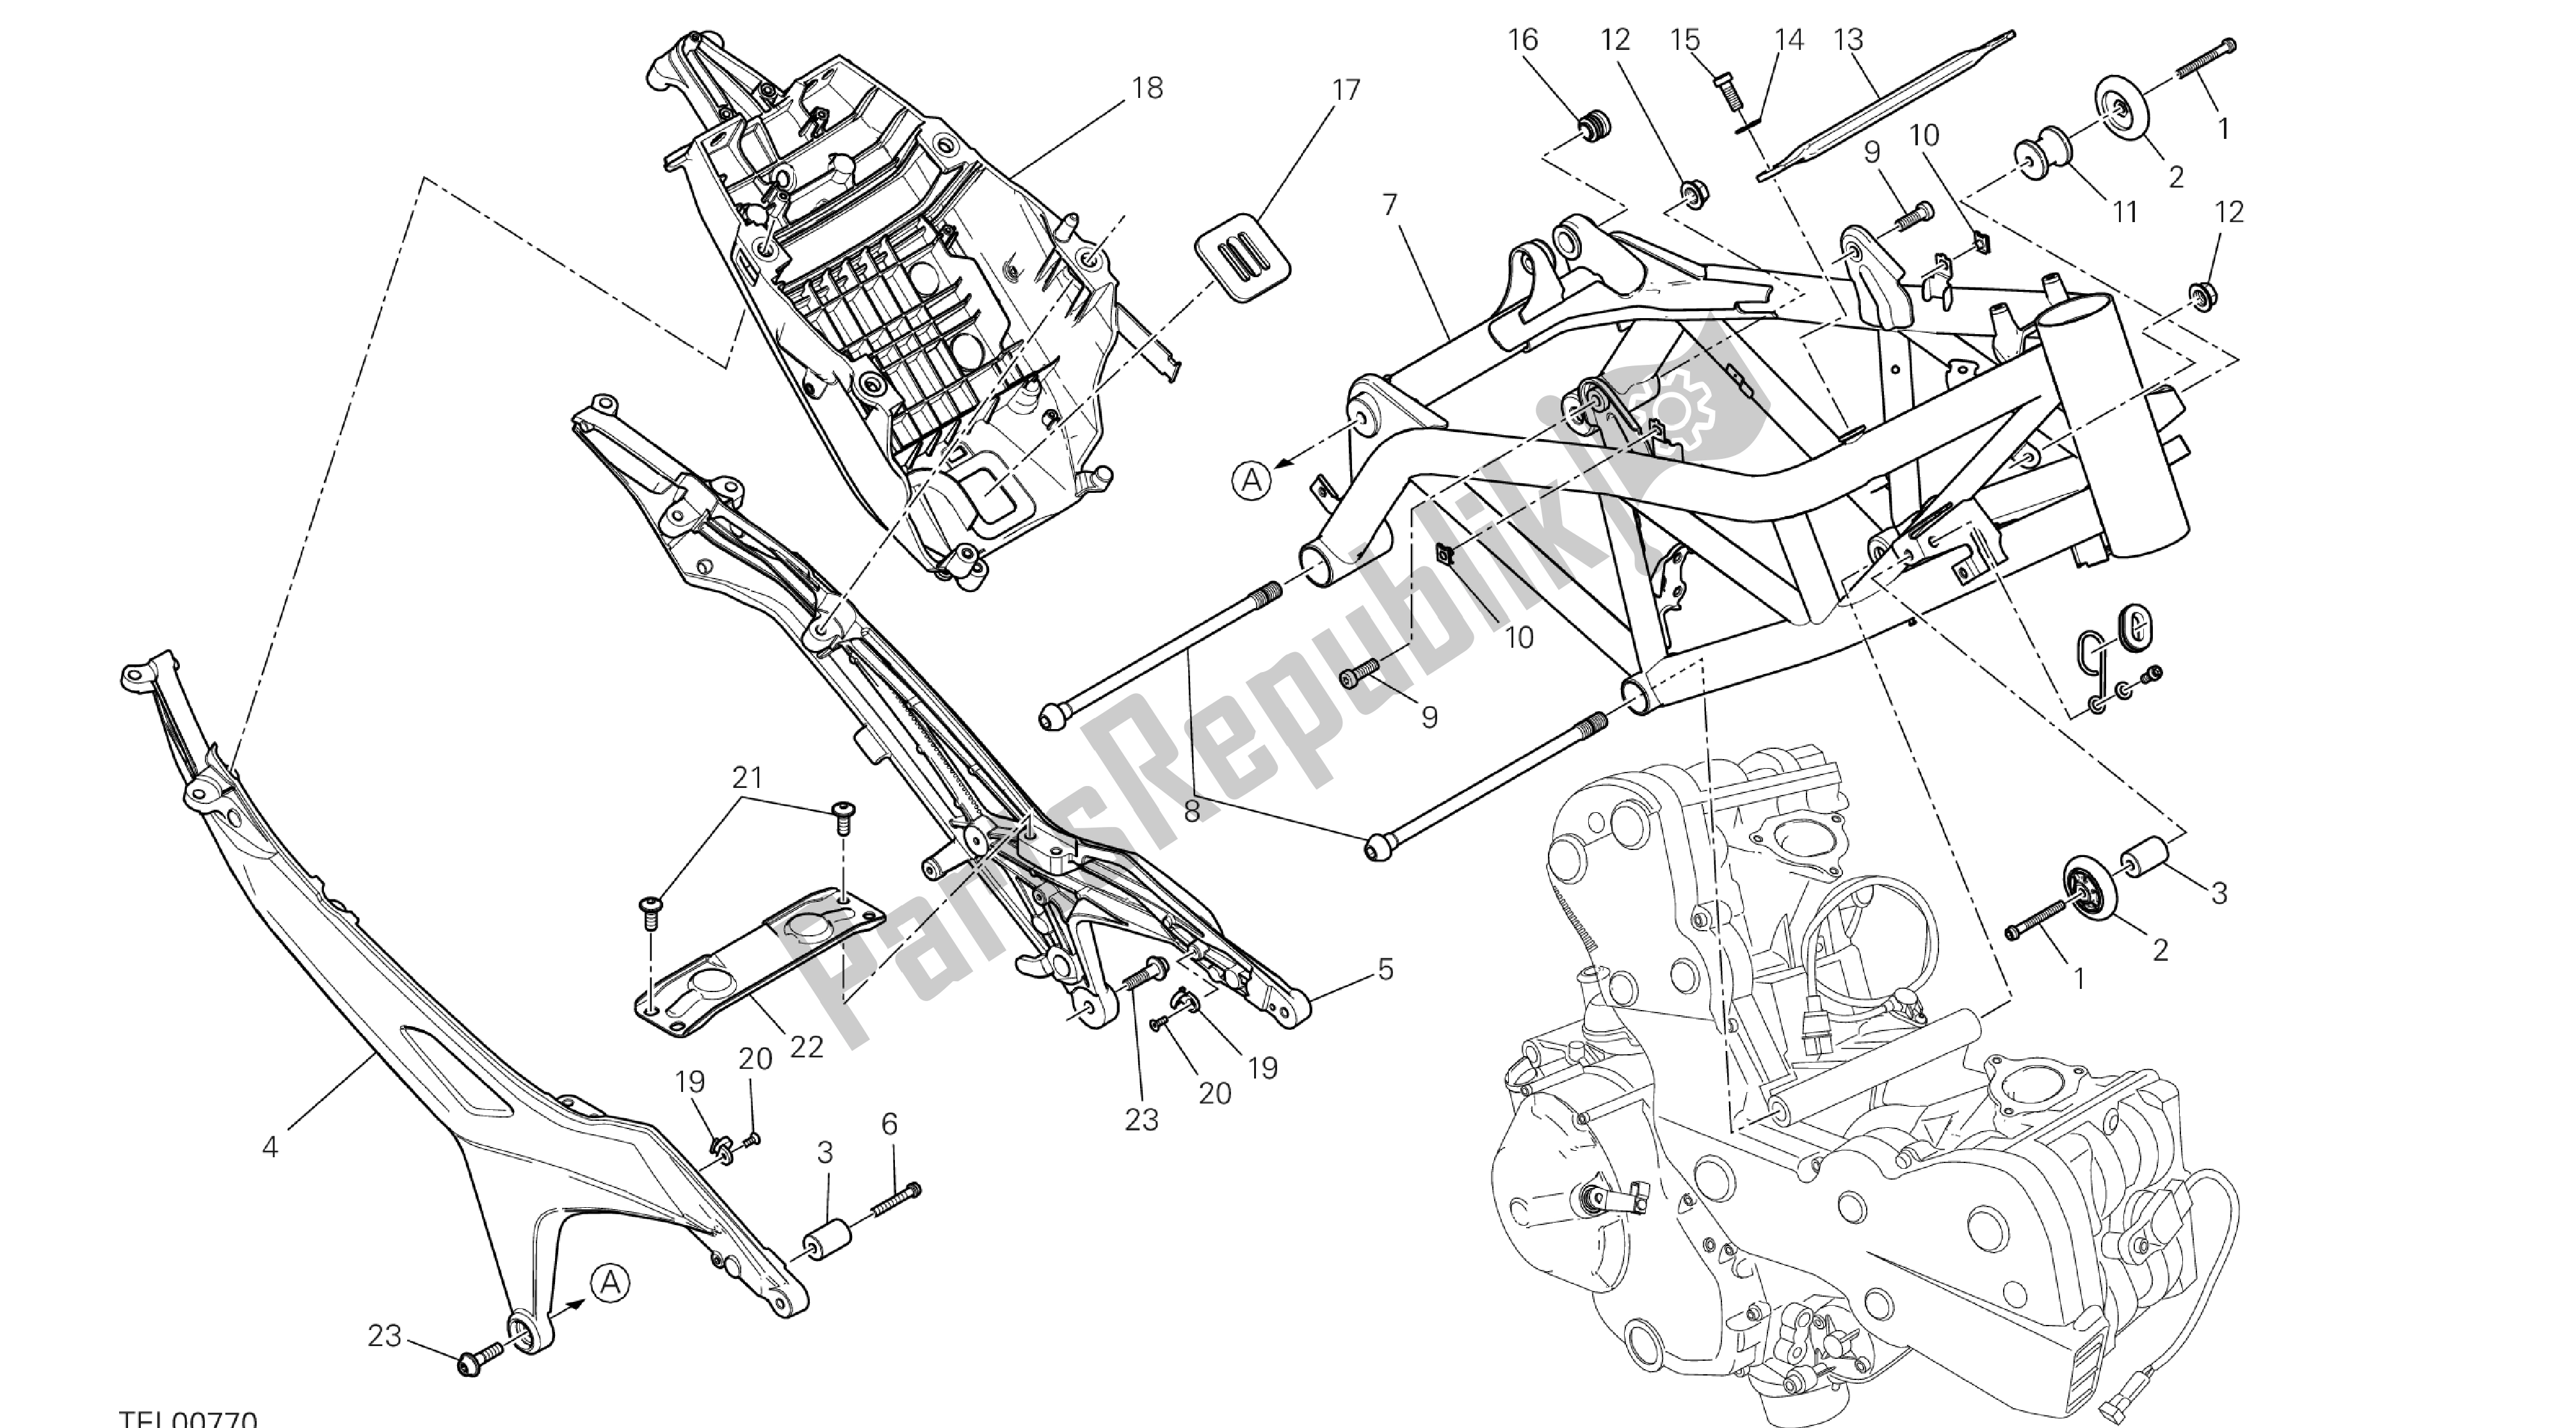 Toutes les pièces pour le Dessin 022 - Cadre [x St: Cal, C Dn, Eur] Groupe Fr Ame du Ducati Hypermotard SP 821 2013